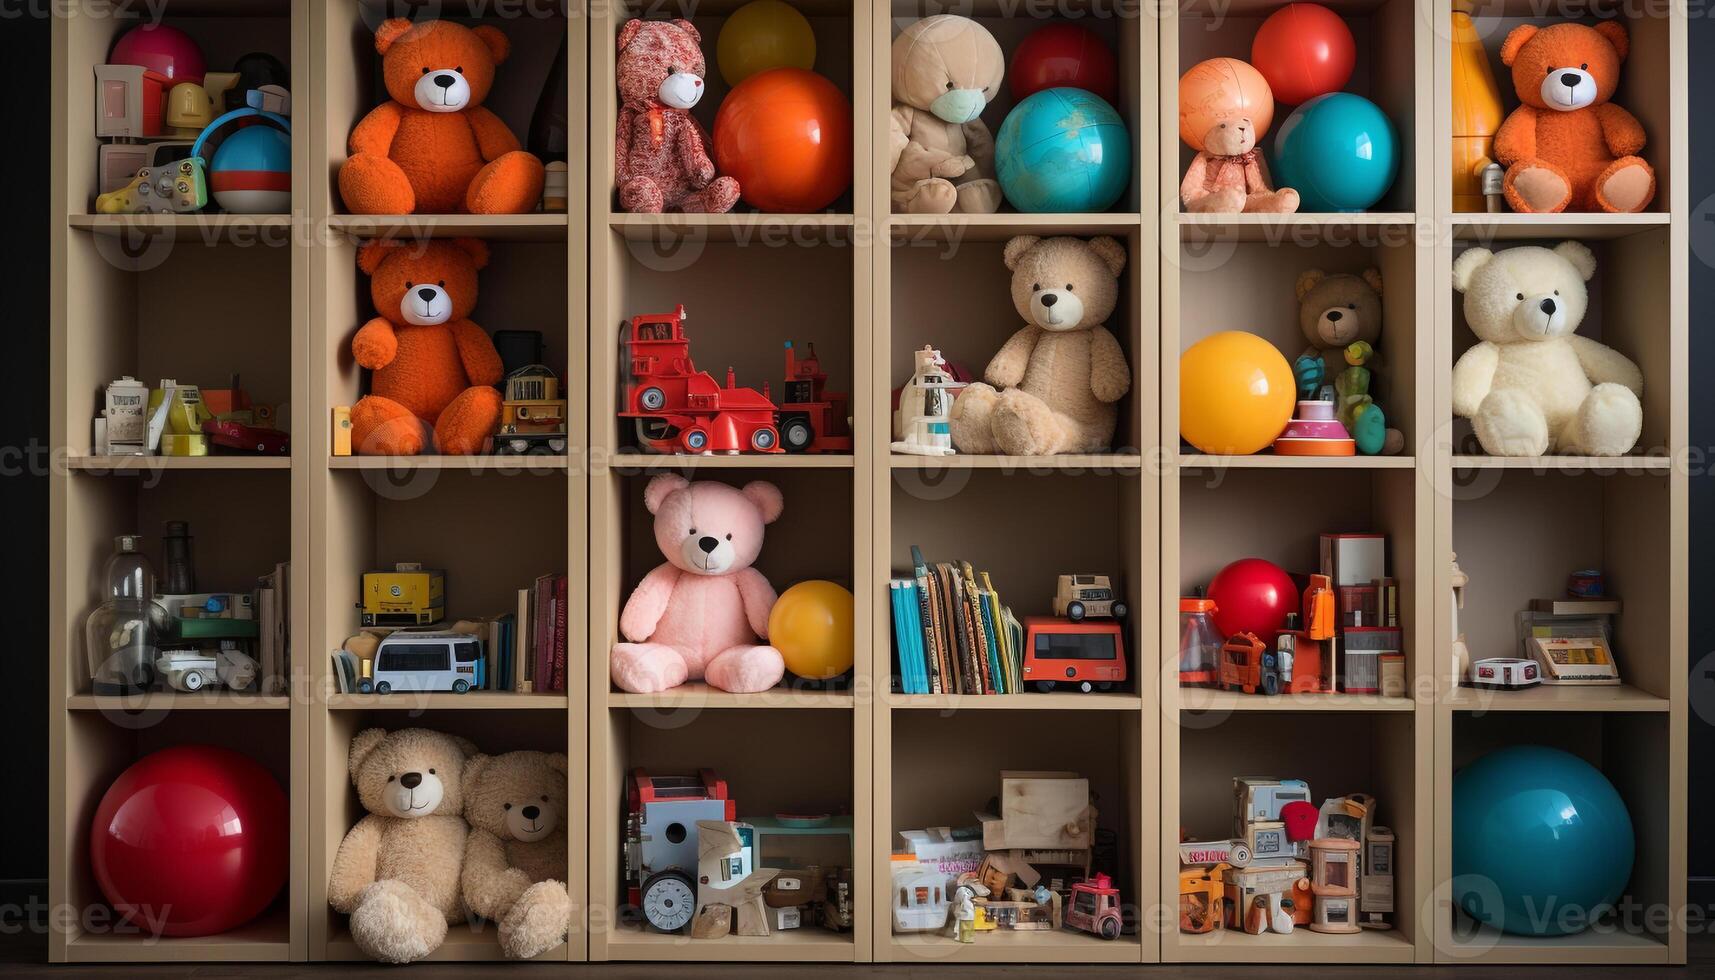 AI generated Cute teddy bear sitting on shelf, bringing joy generated by AI photo